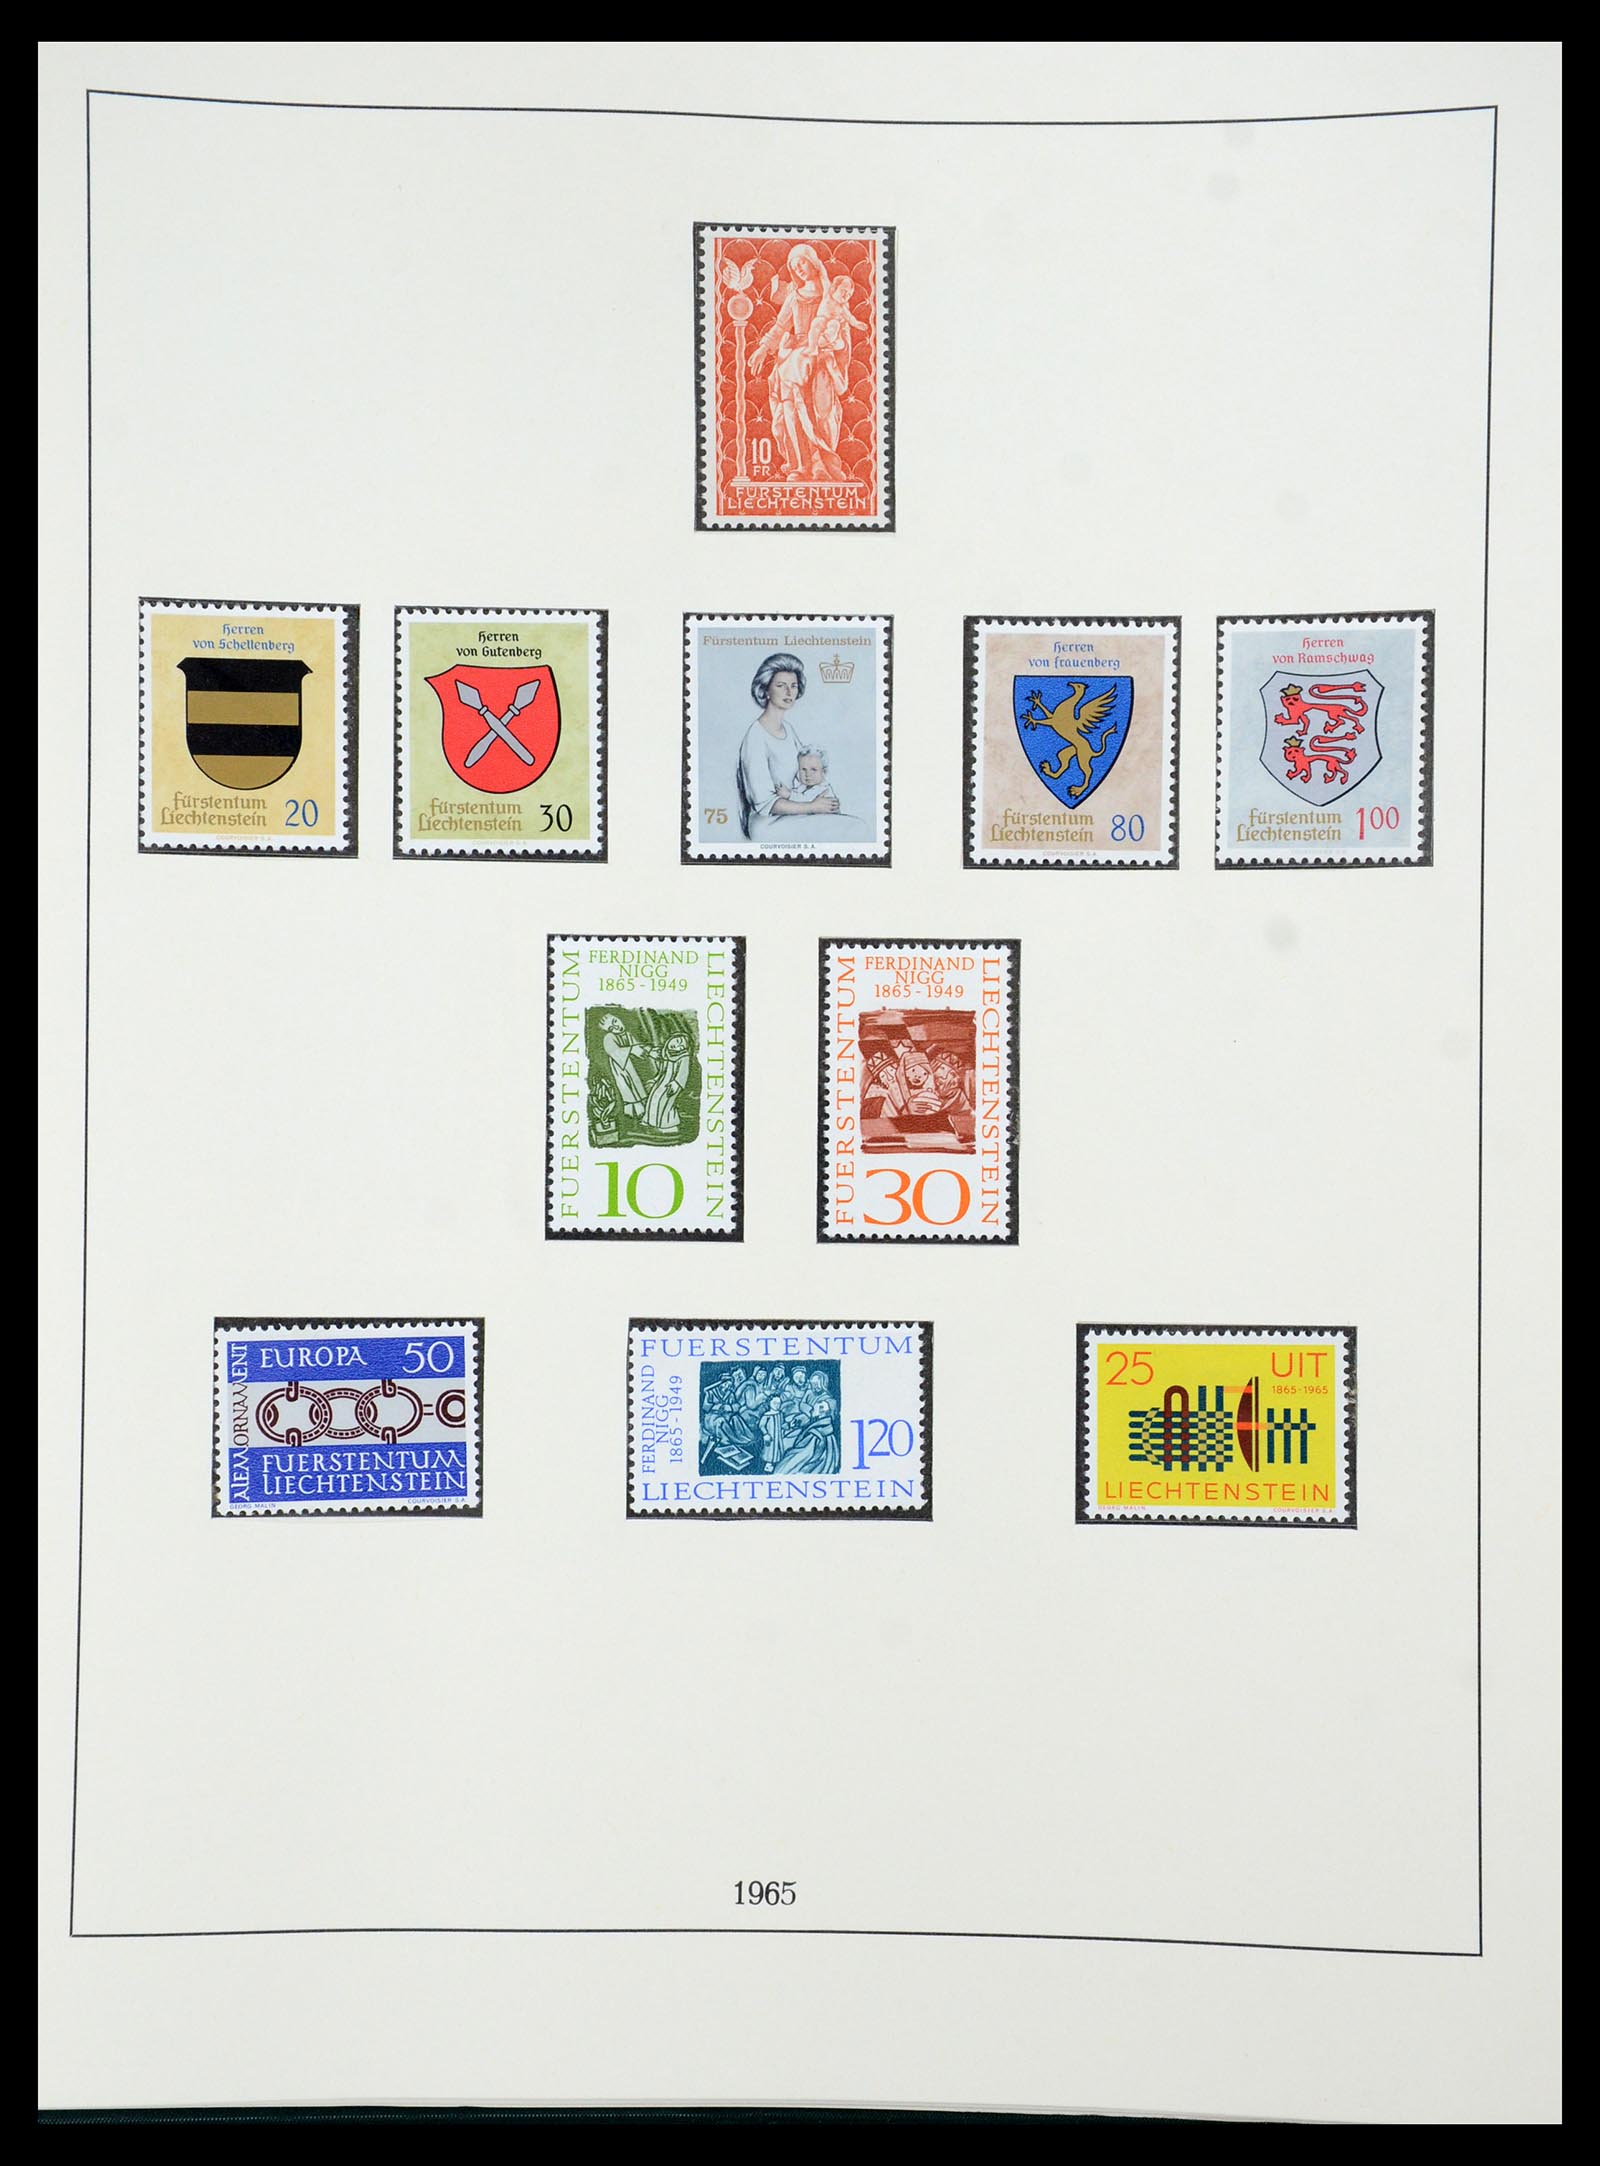 36358 040 - Stamp collection 36358 Liechtenstein 1912-1971.